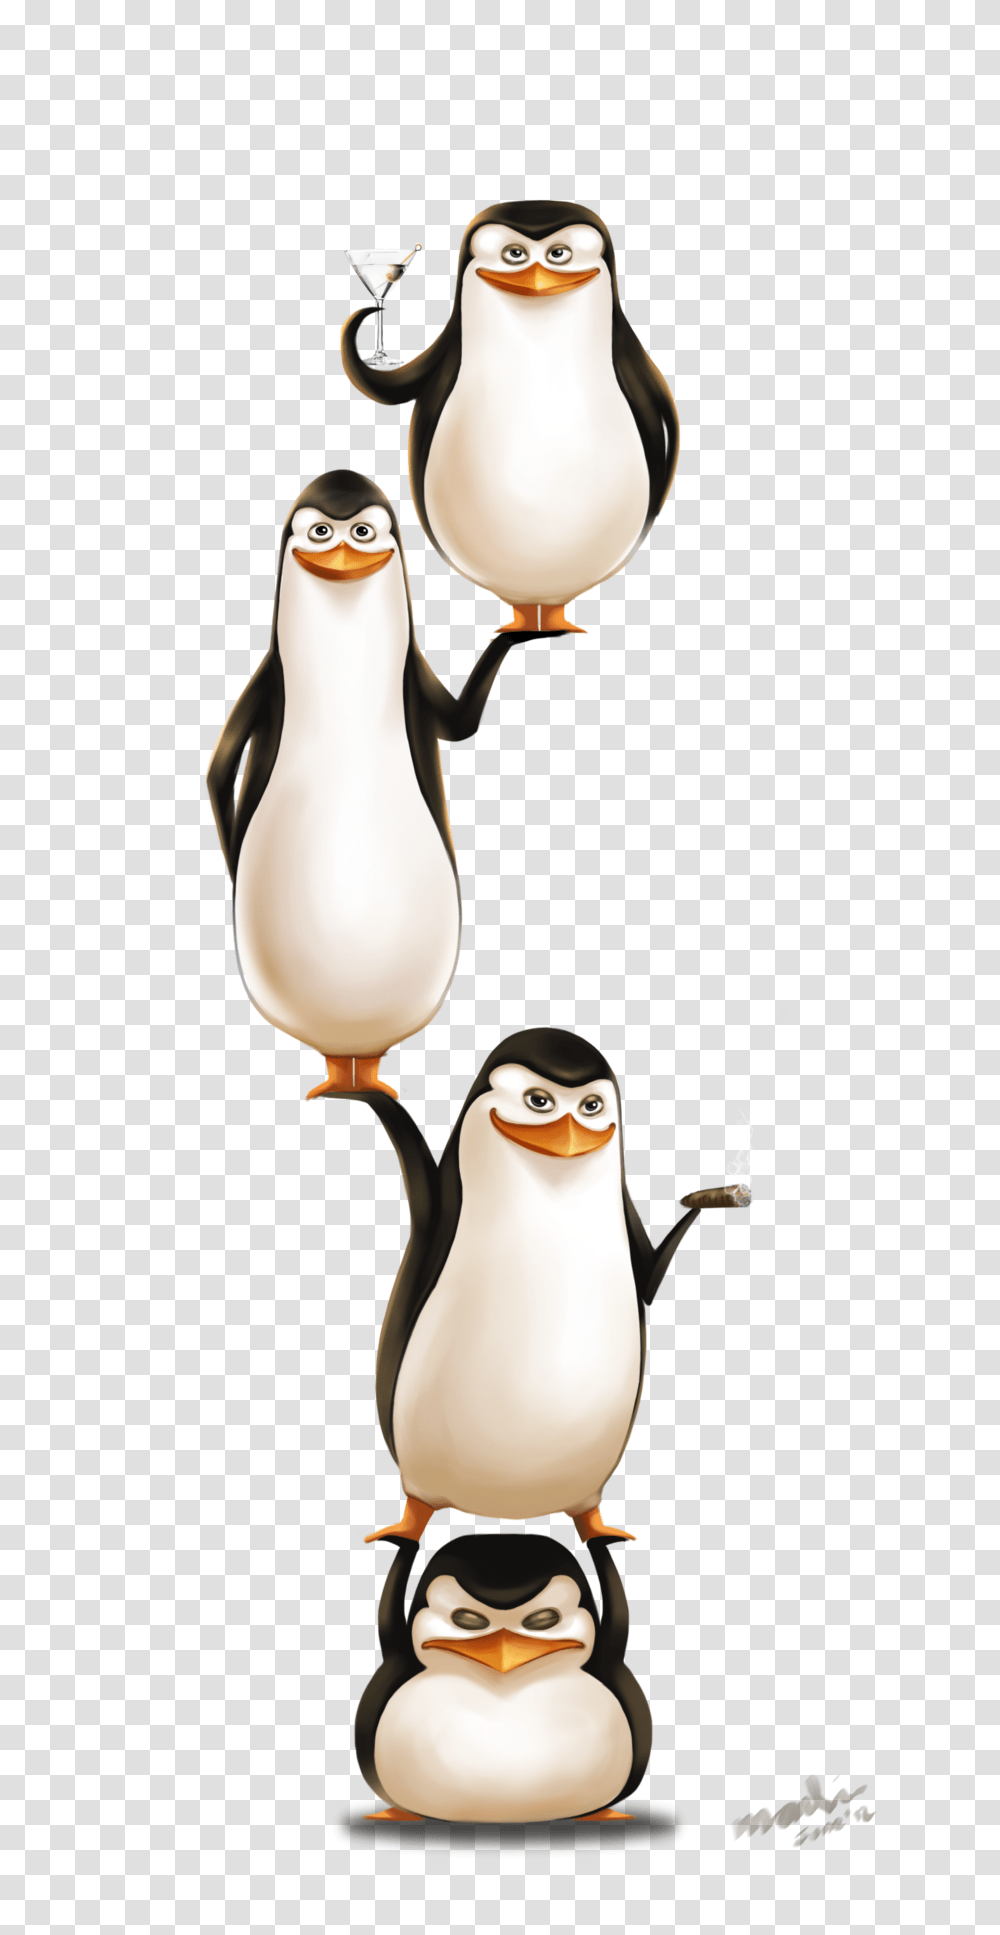 Madagascar Penguins, Character, Bird, Animal, Figurine Transparent Png